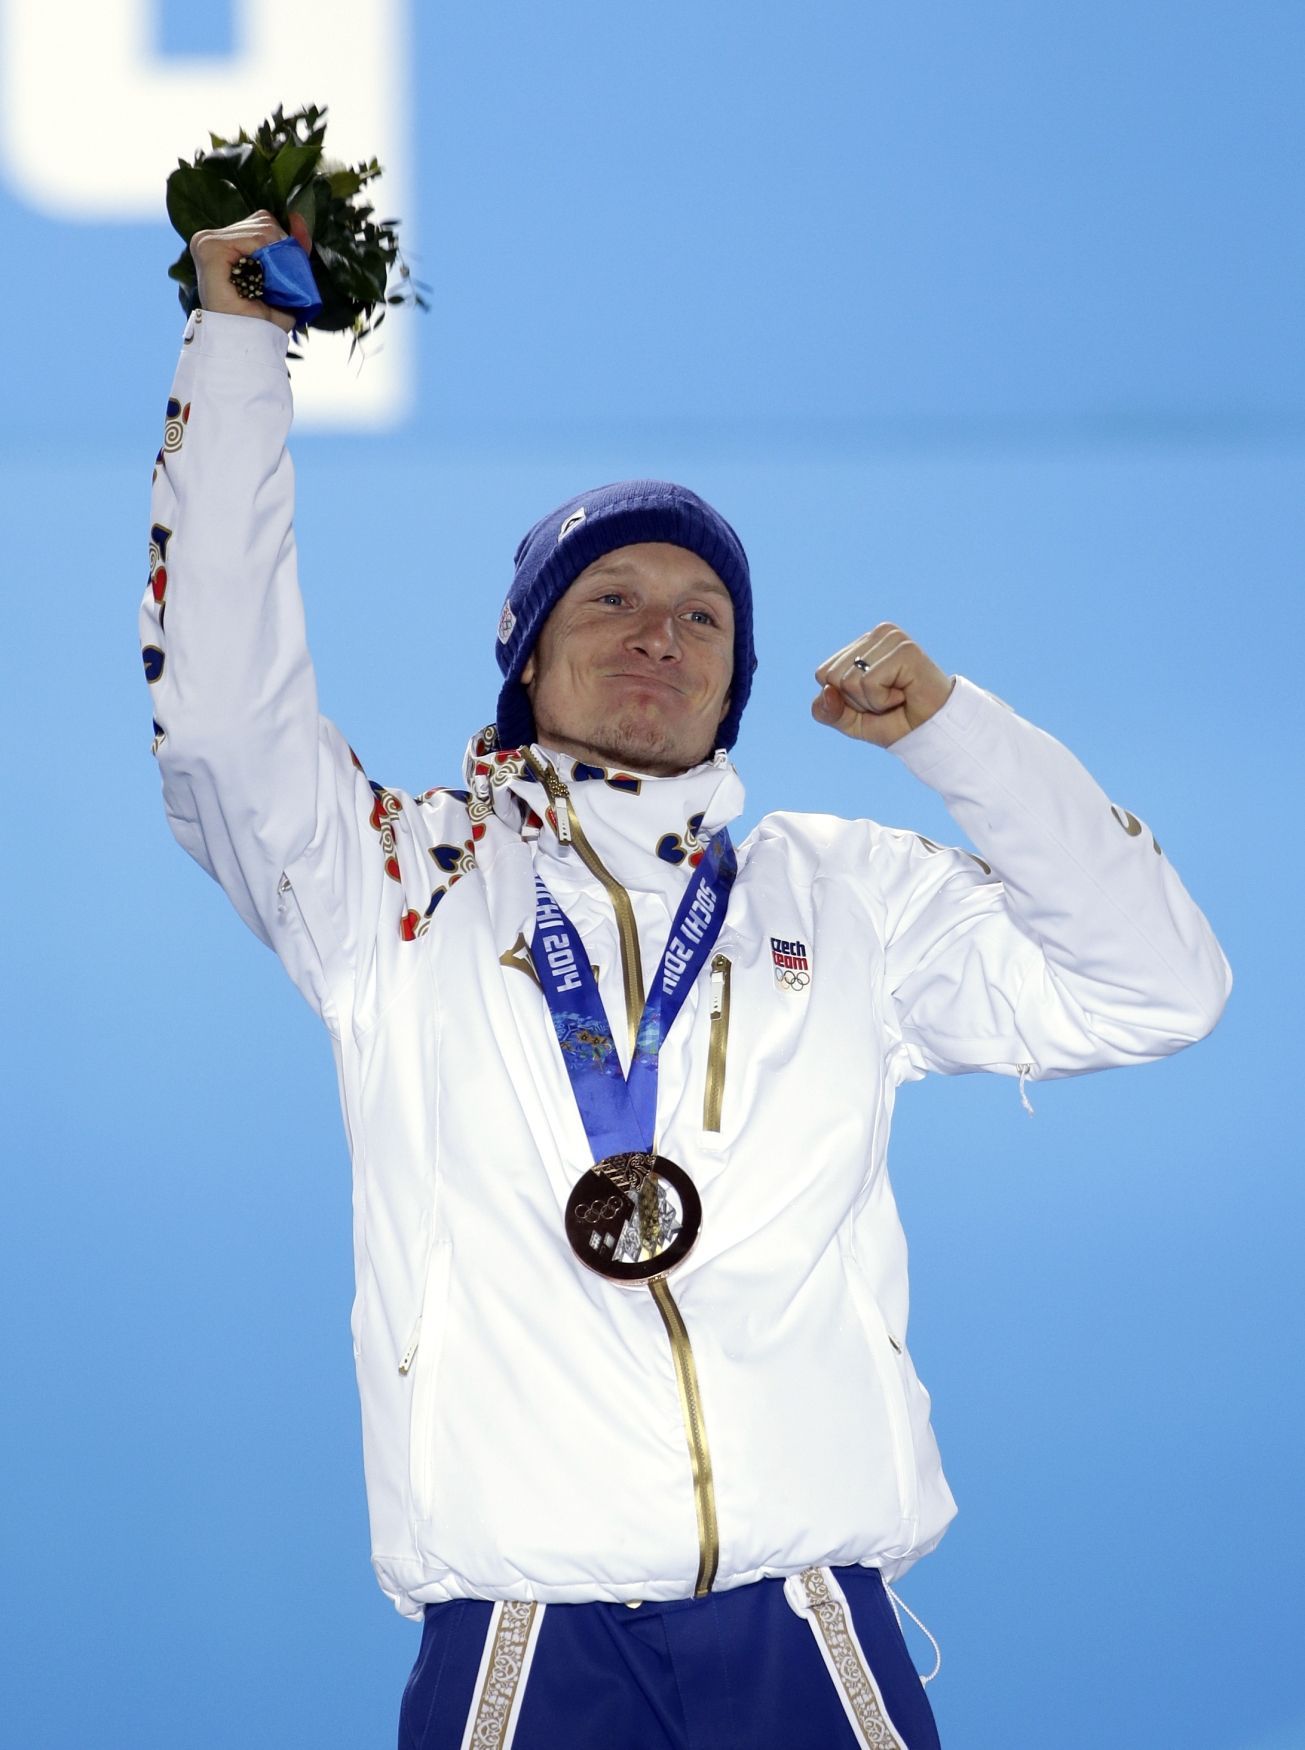 Soči 2014, biatlon: Ondřej Moravec s bronzovou medailí